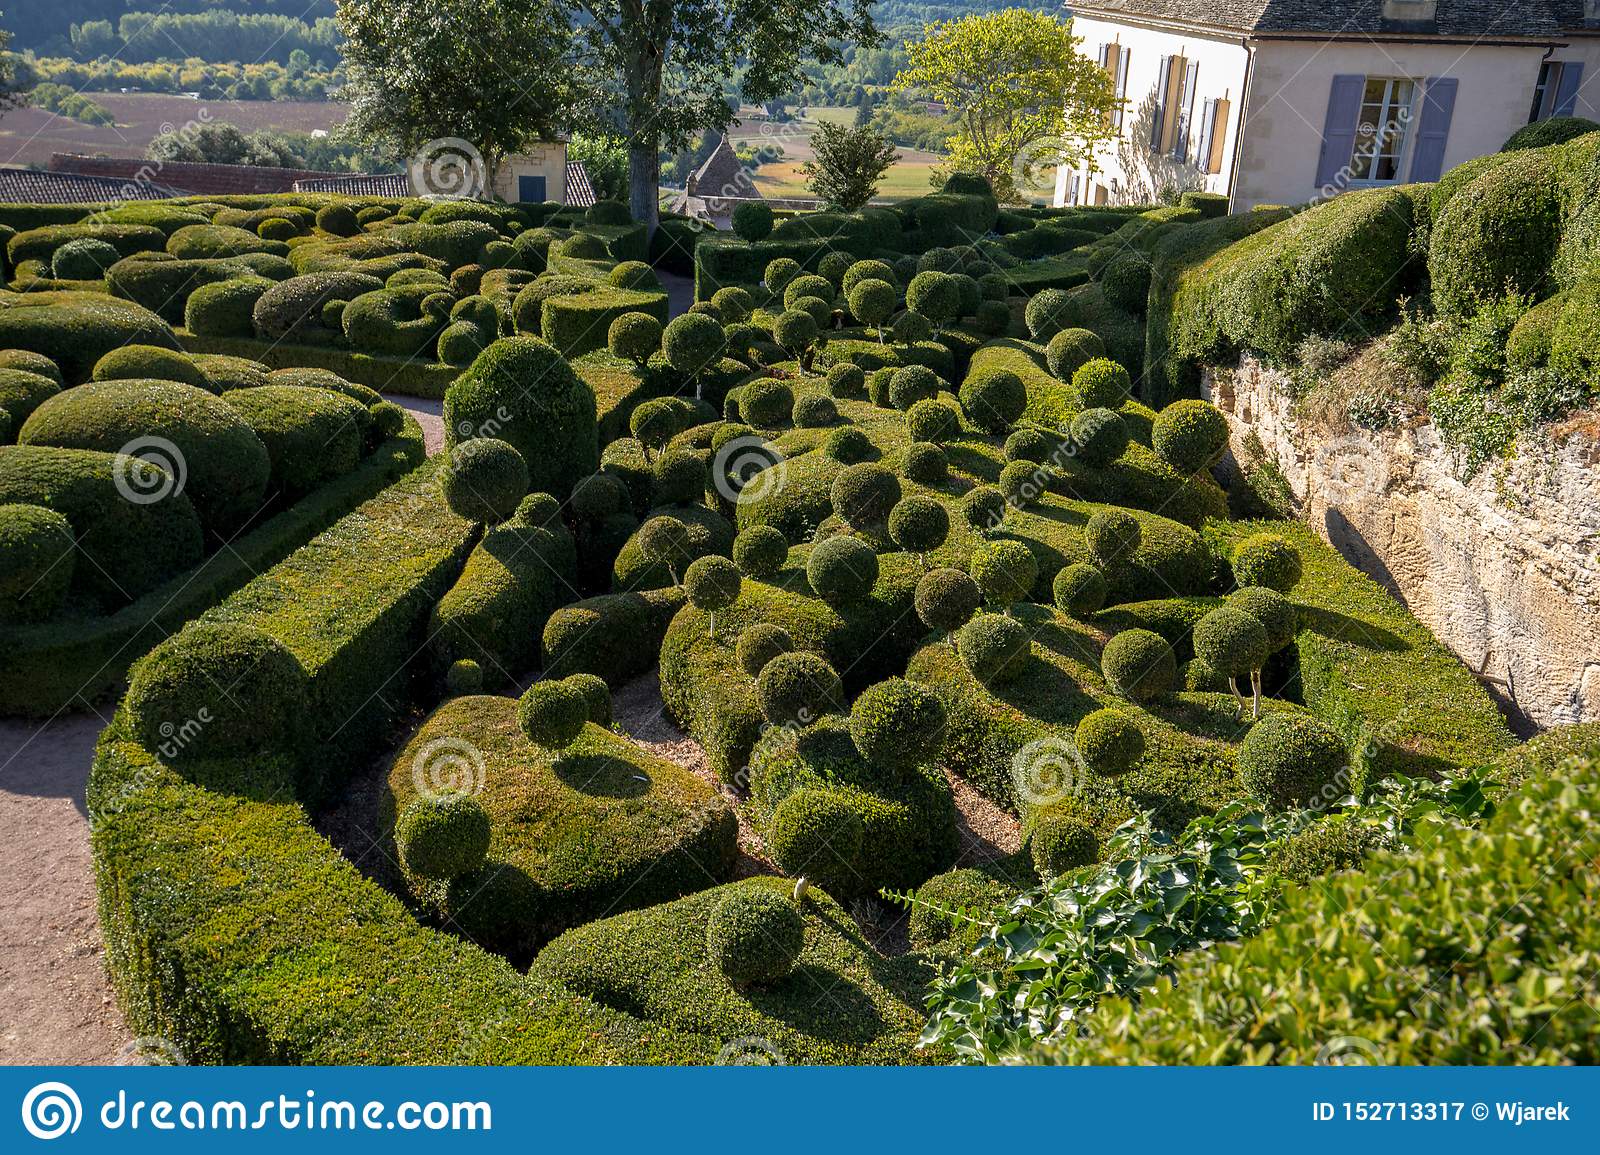 topiary gardens jardins de marqueyssac dordogne region france topiary gardens jardins de